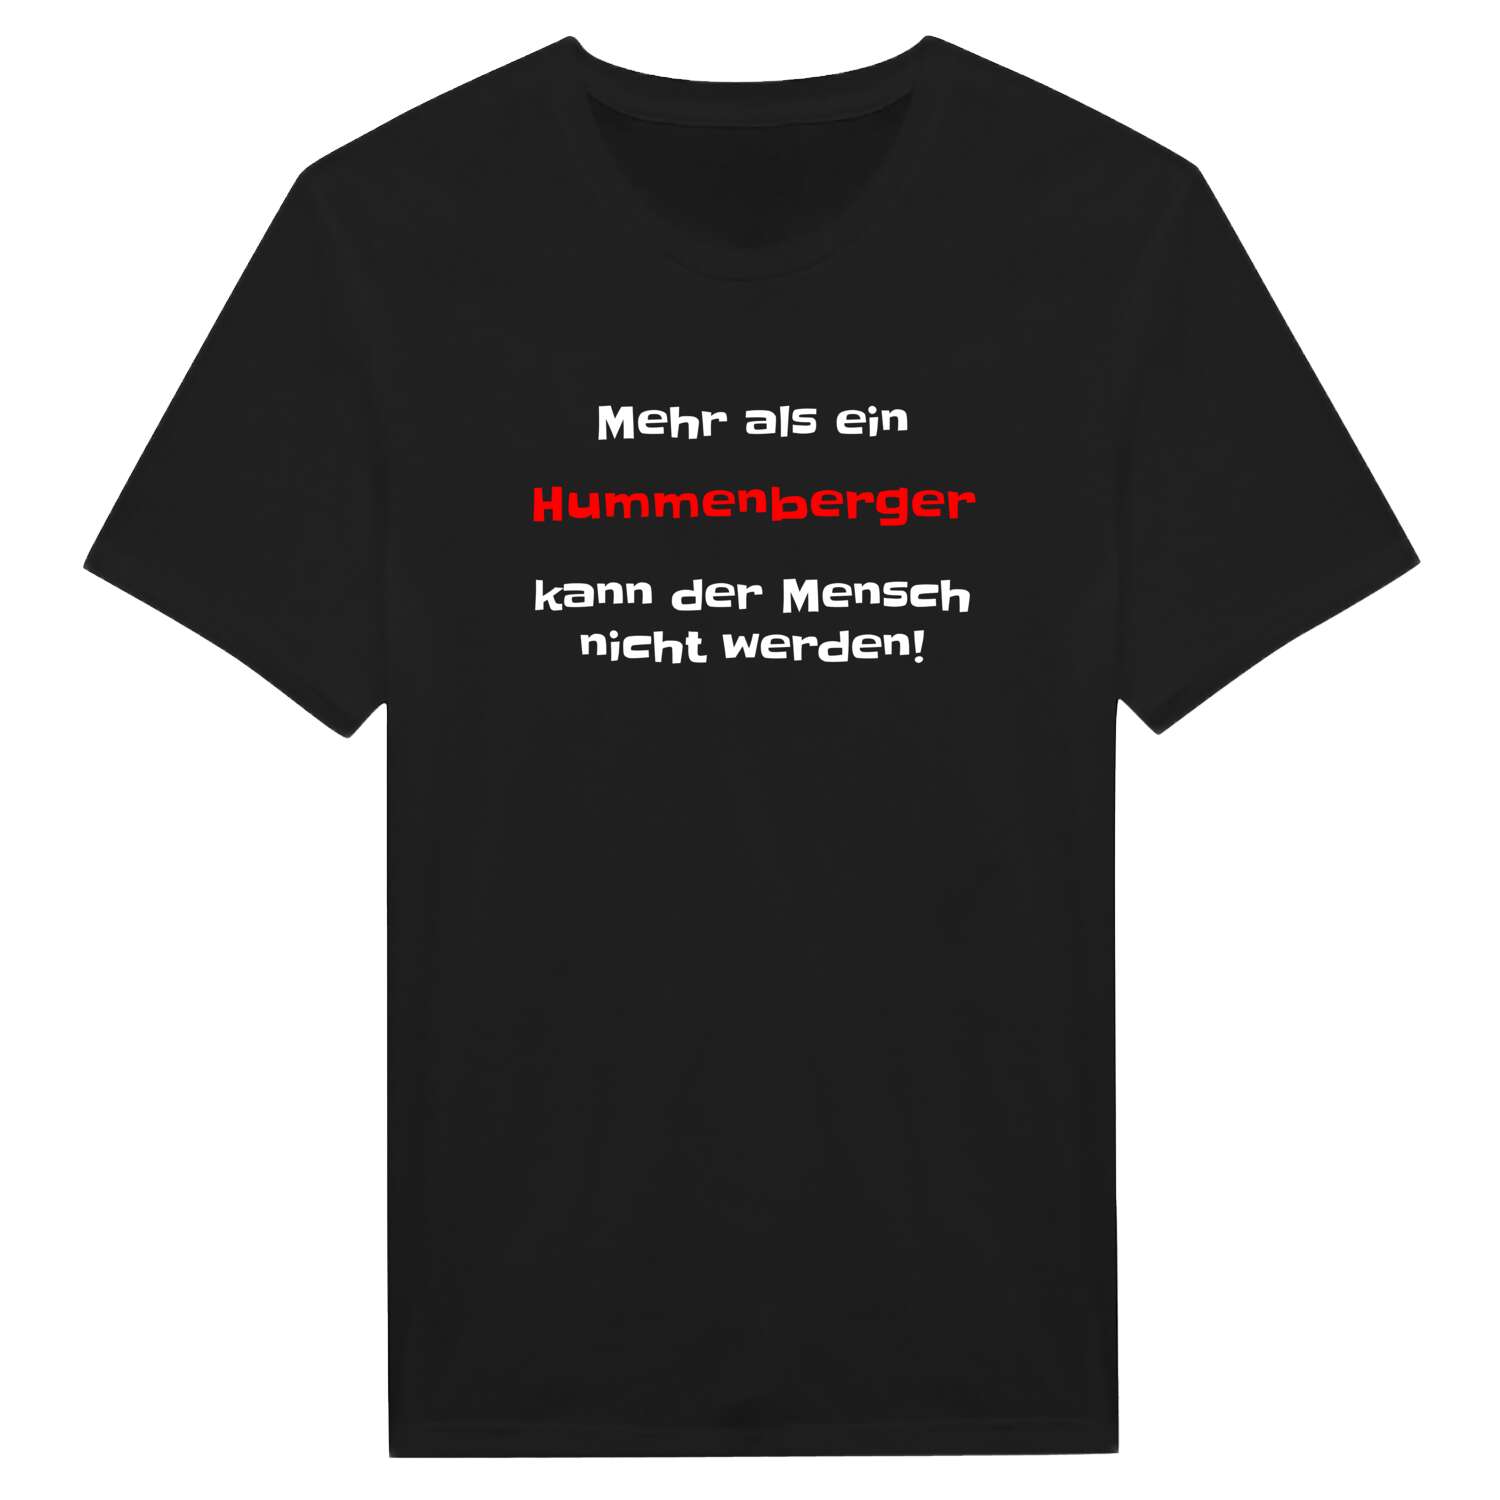 Hummenberg T-Shirt »Mehr als ein«